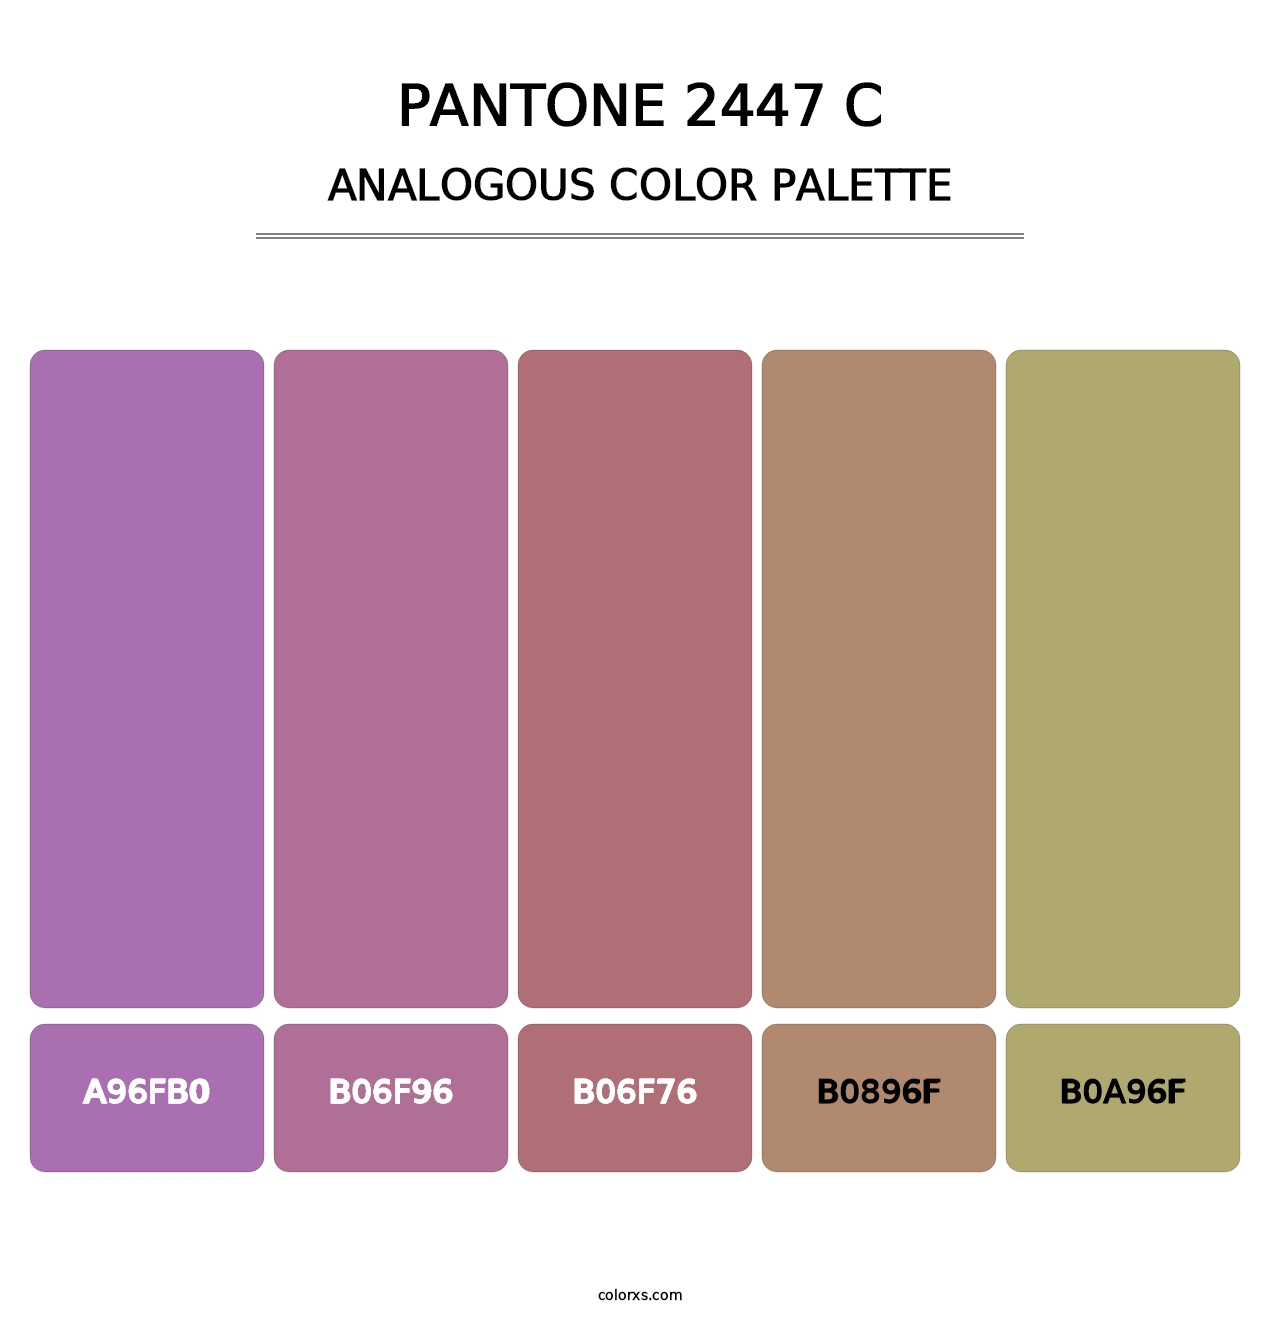 PANTONE 2447 C - Analogous Color Palette